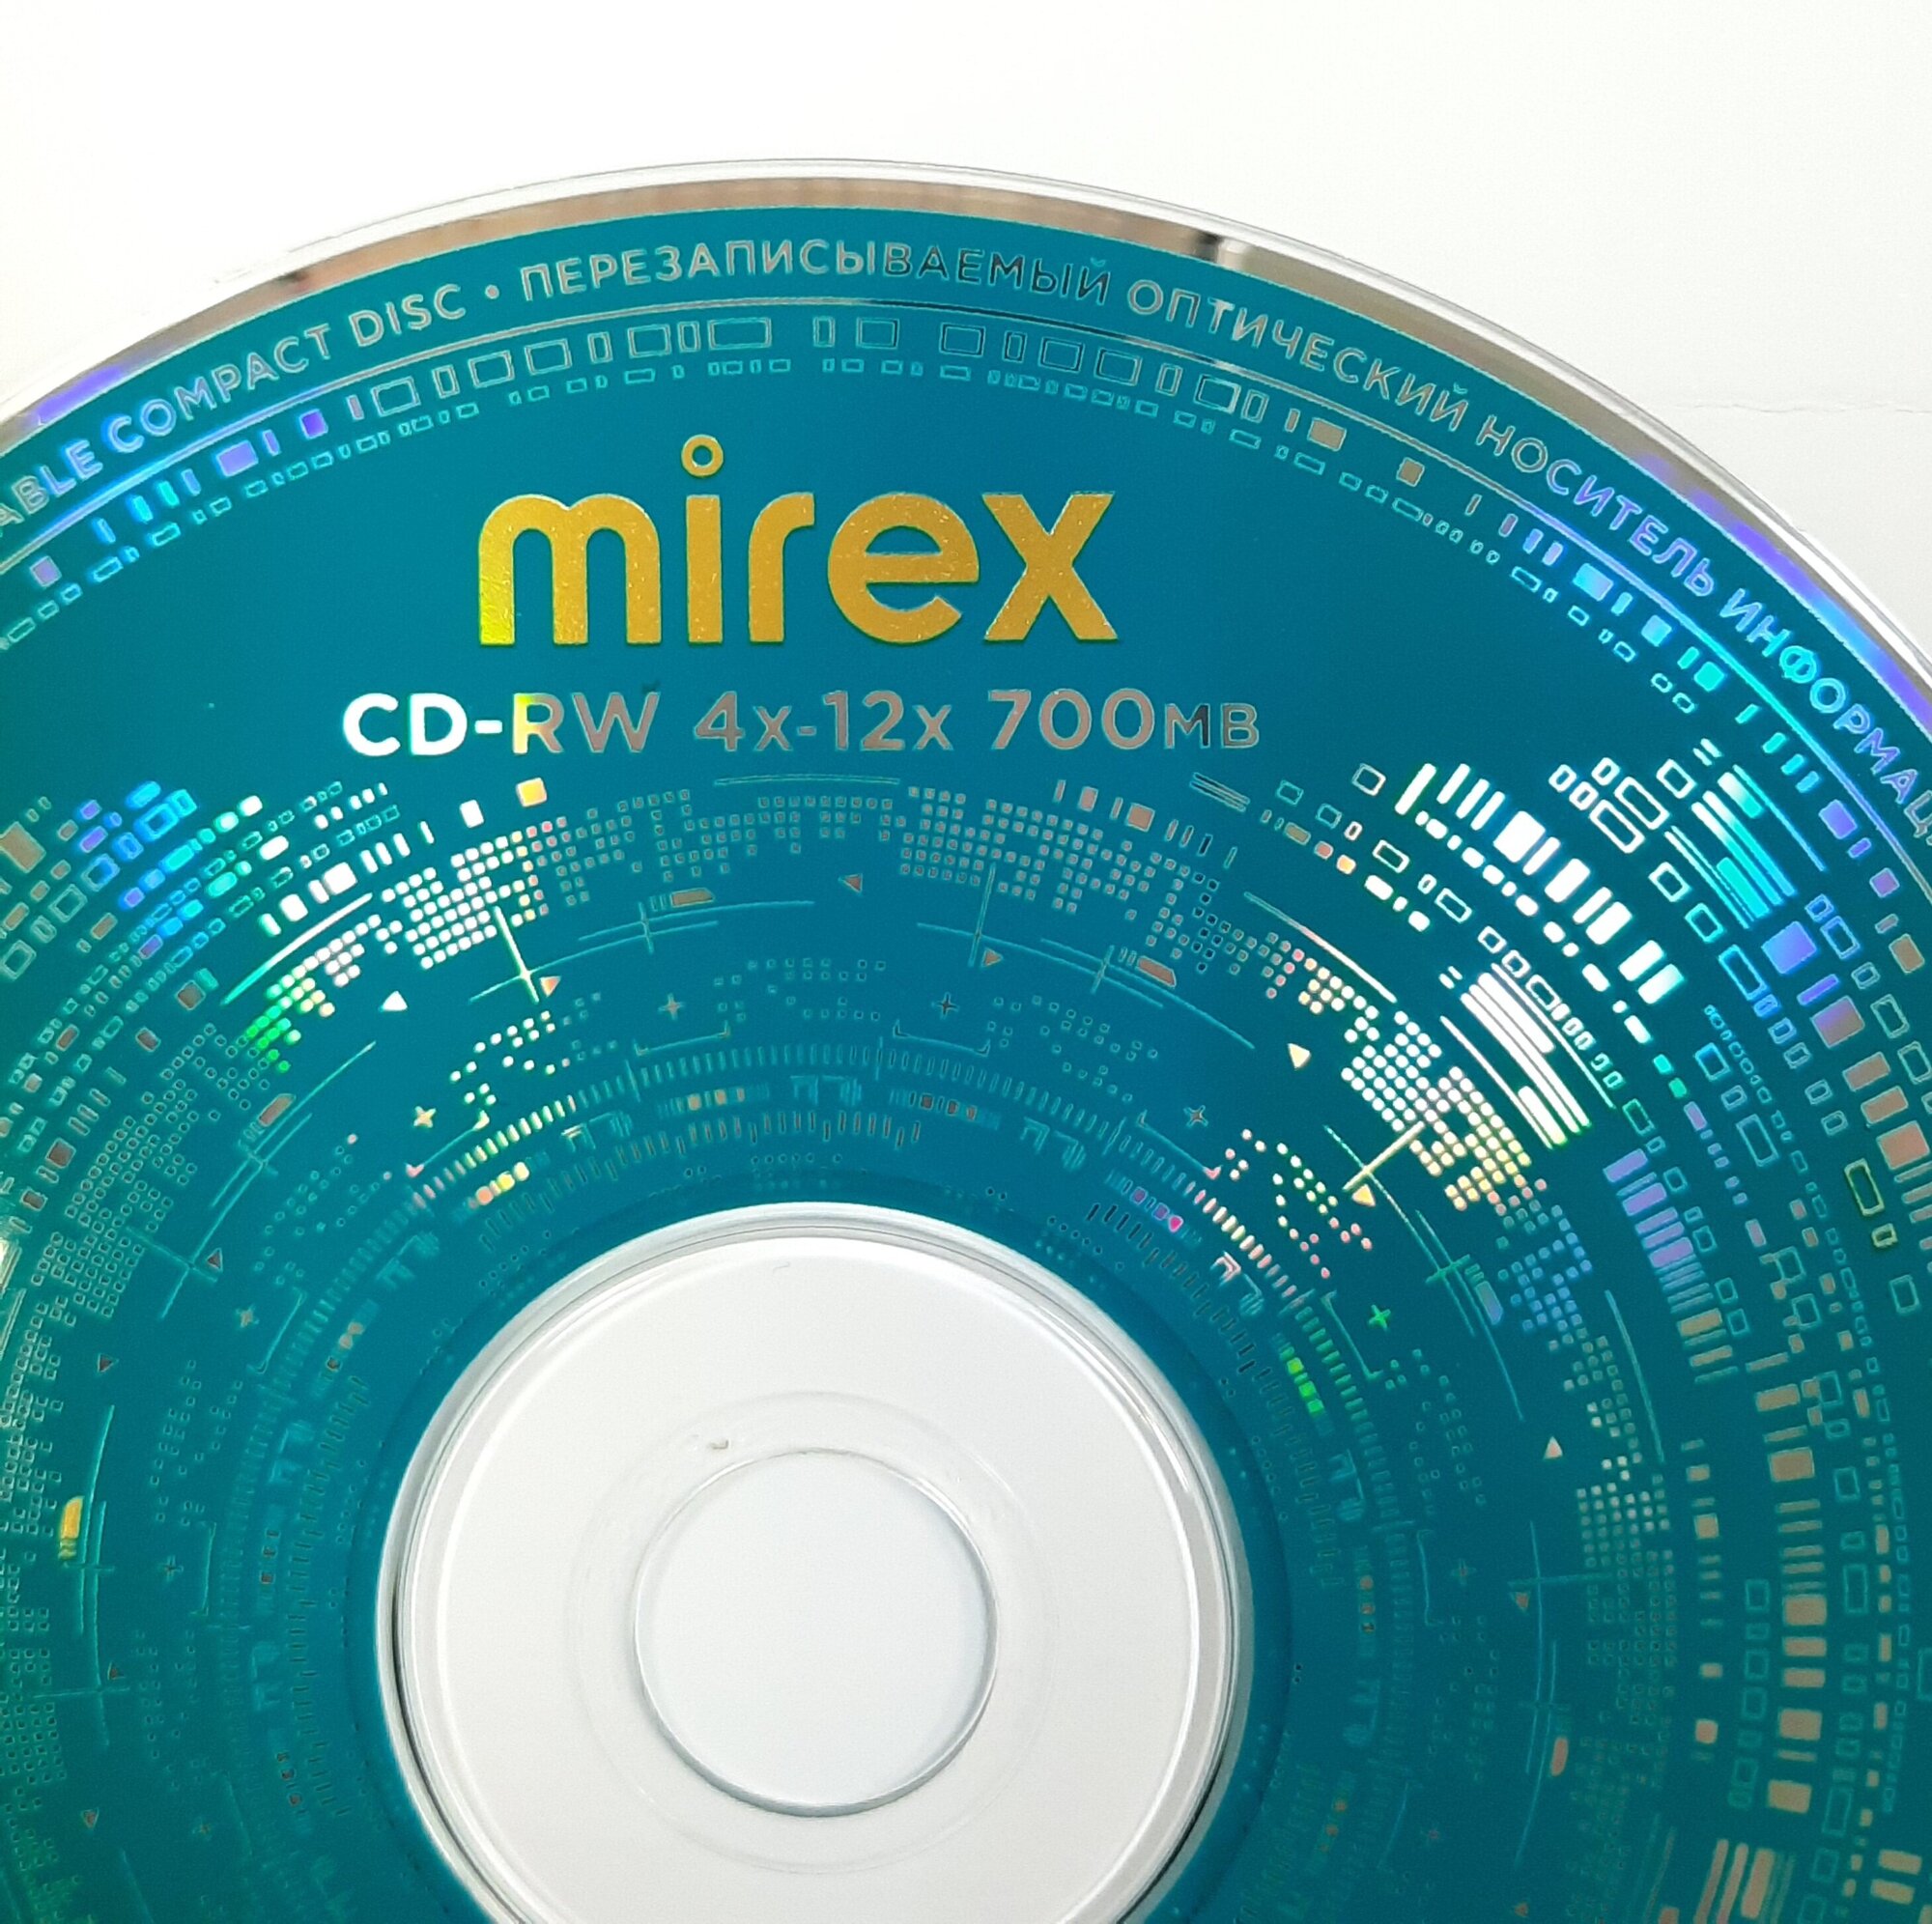 Компакт диск CD-RW 700мБ Mirex*4-12 в конверте, по 5 шт, перезаписываемый.